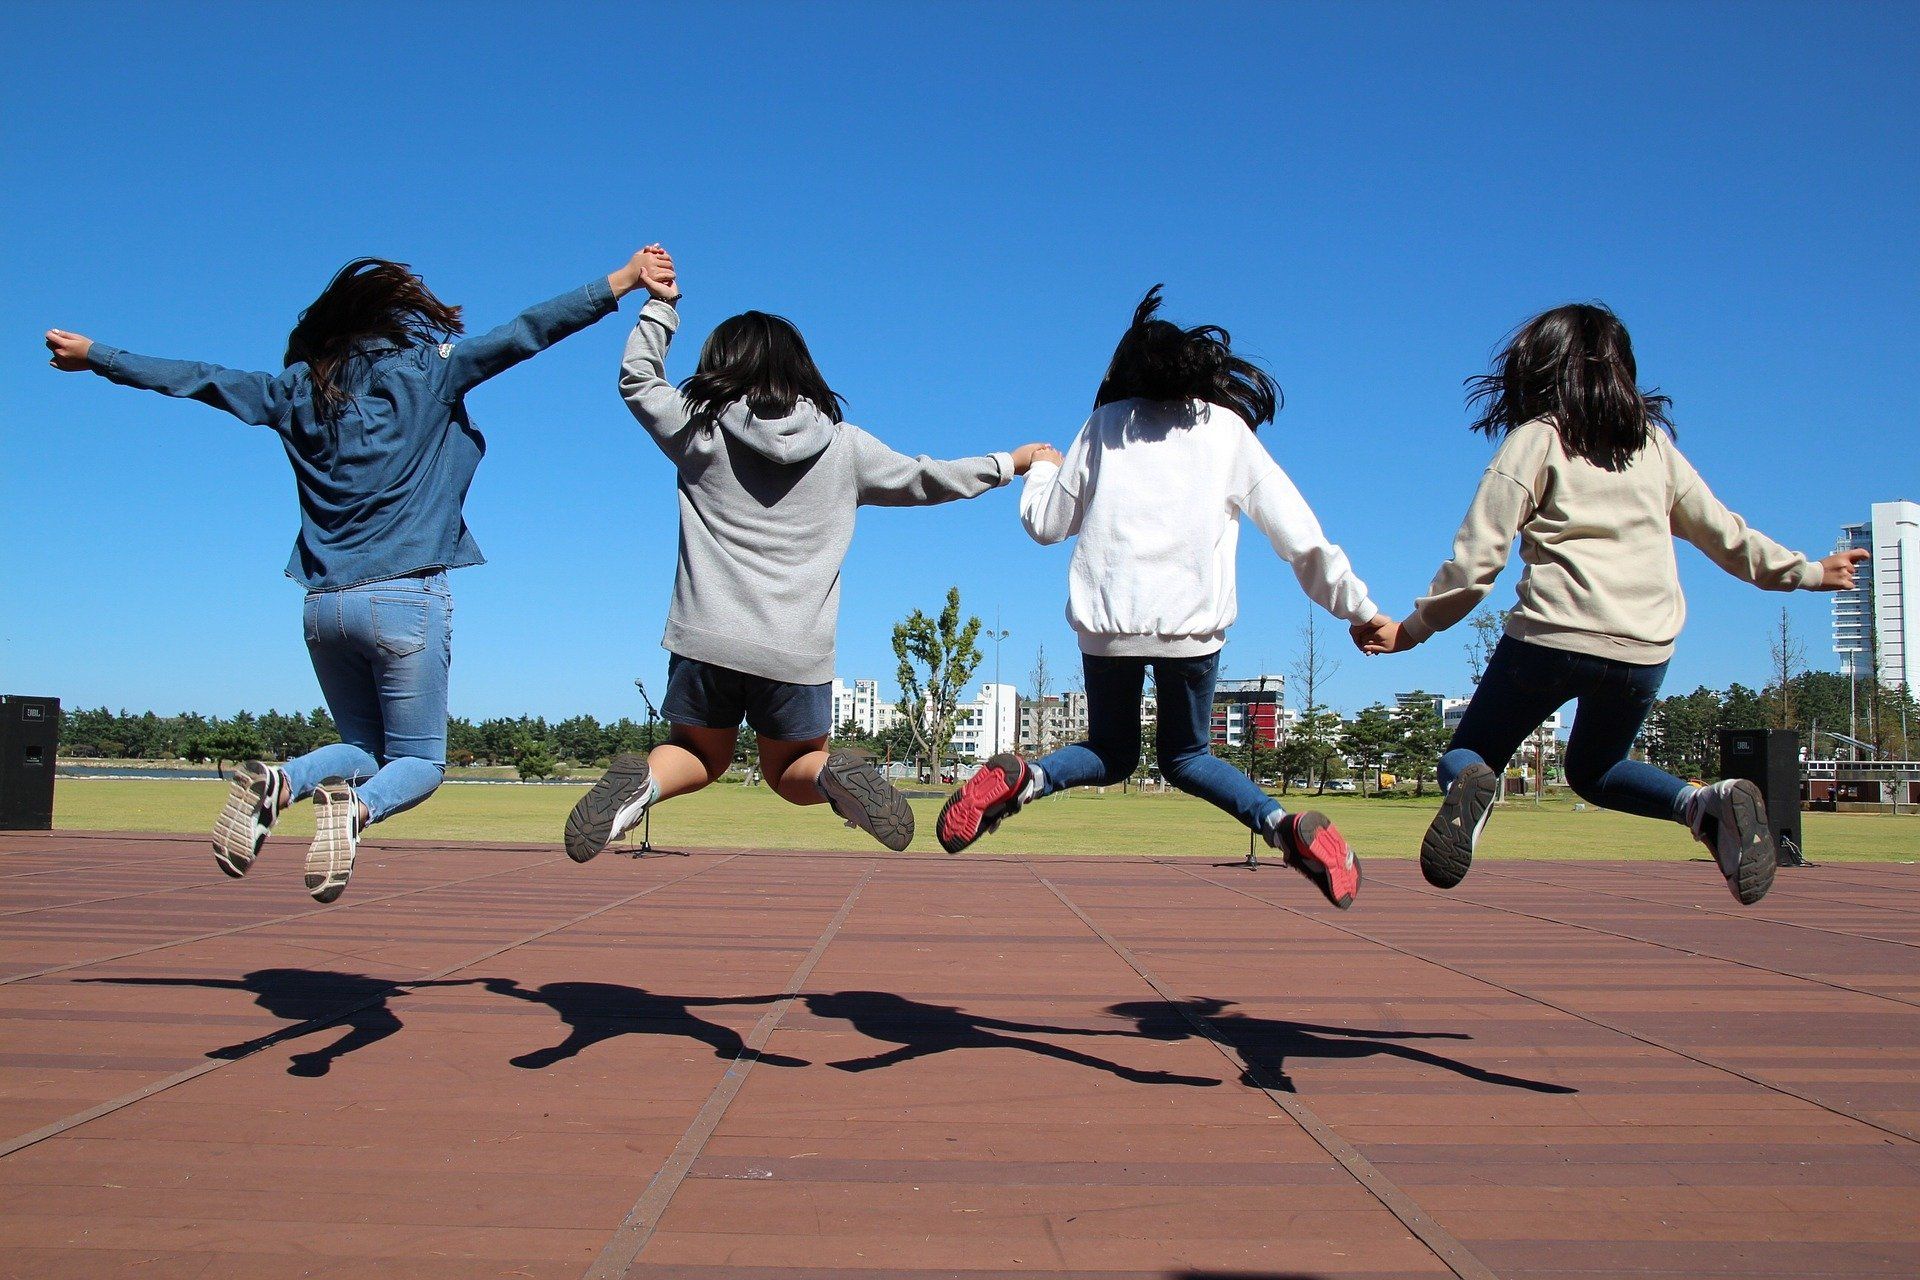 Hüpfende Kinder (c) Bild von manseok Kim auf Pixabay